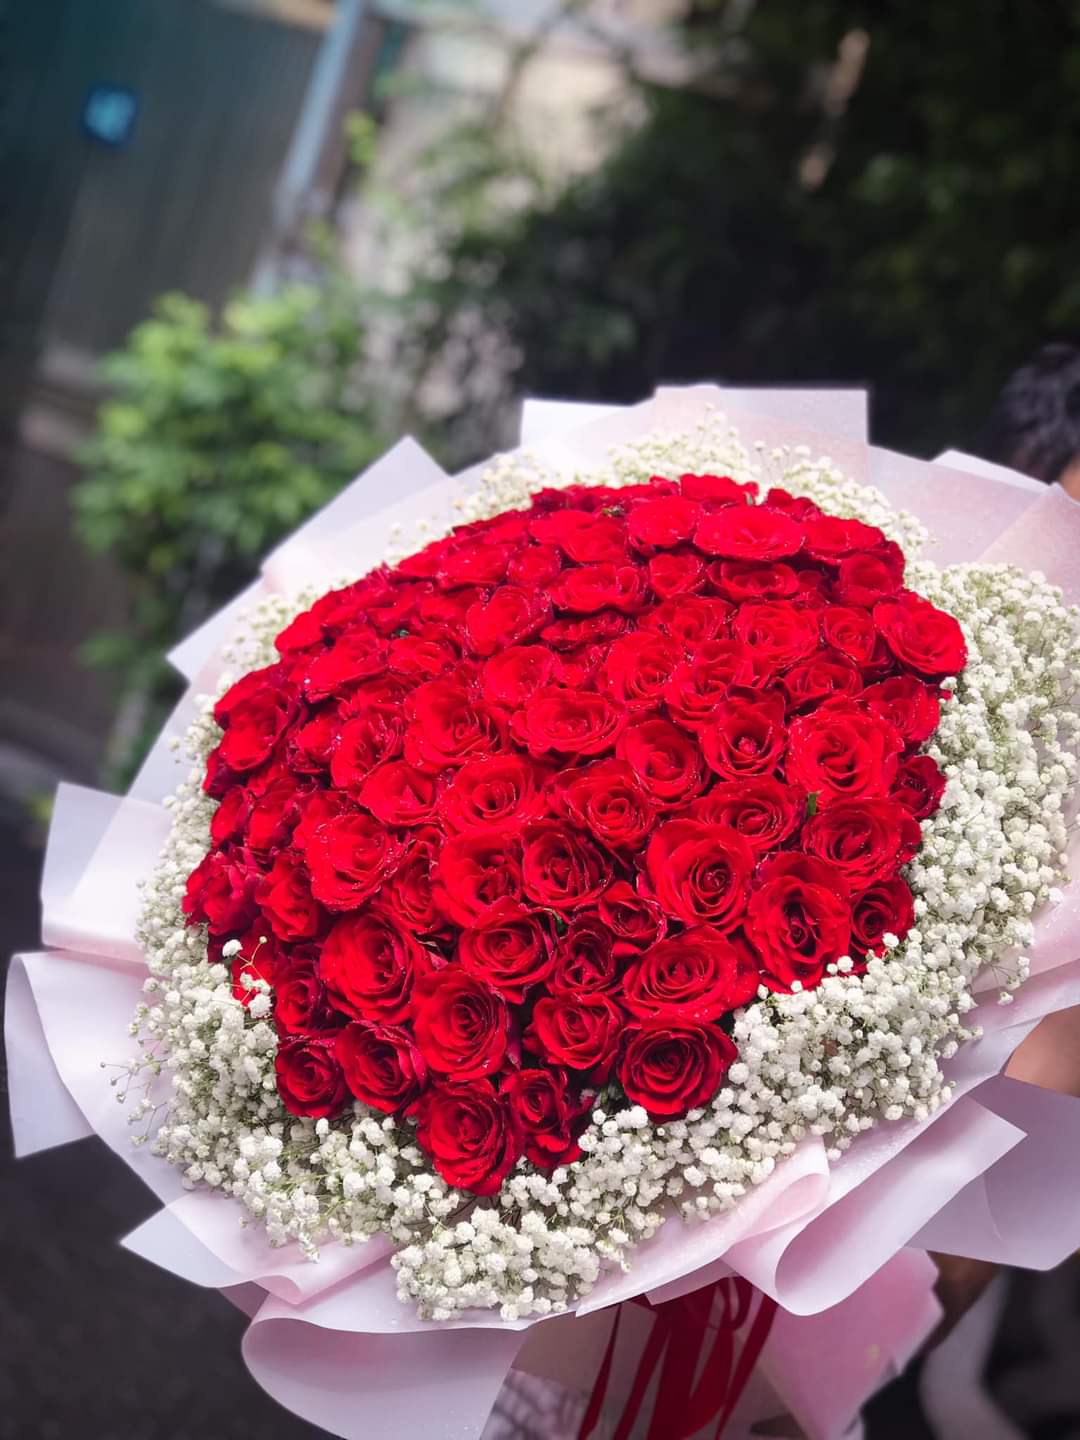 Đóa hoa hồng đỏ mang vẻ đẹp của một tình yêu vĩnh cửu